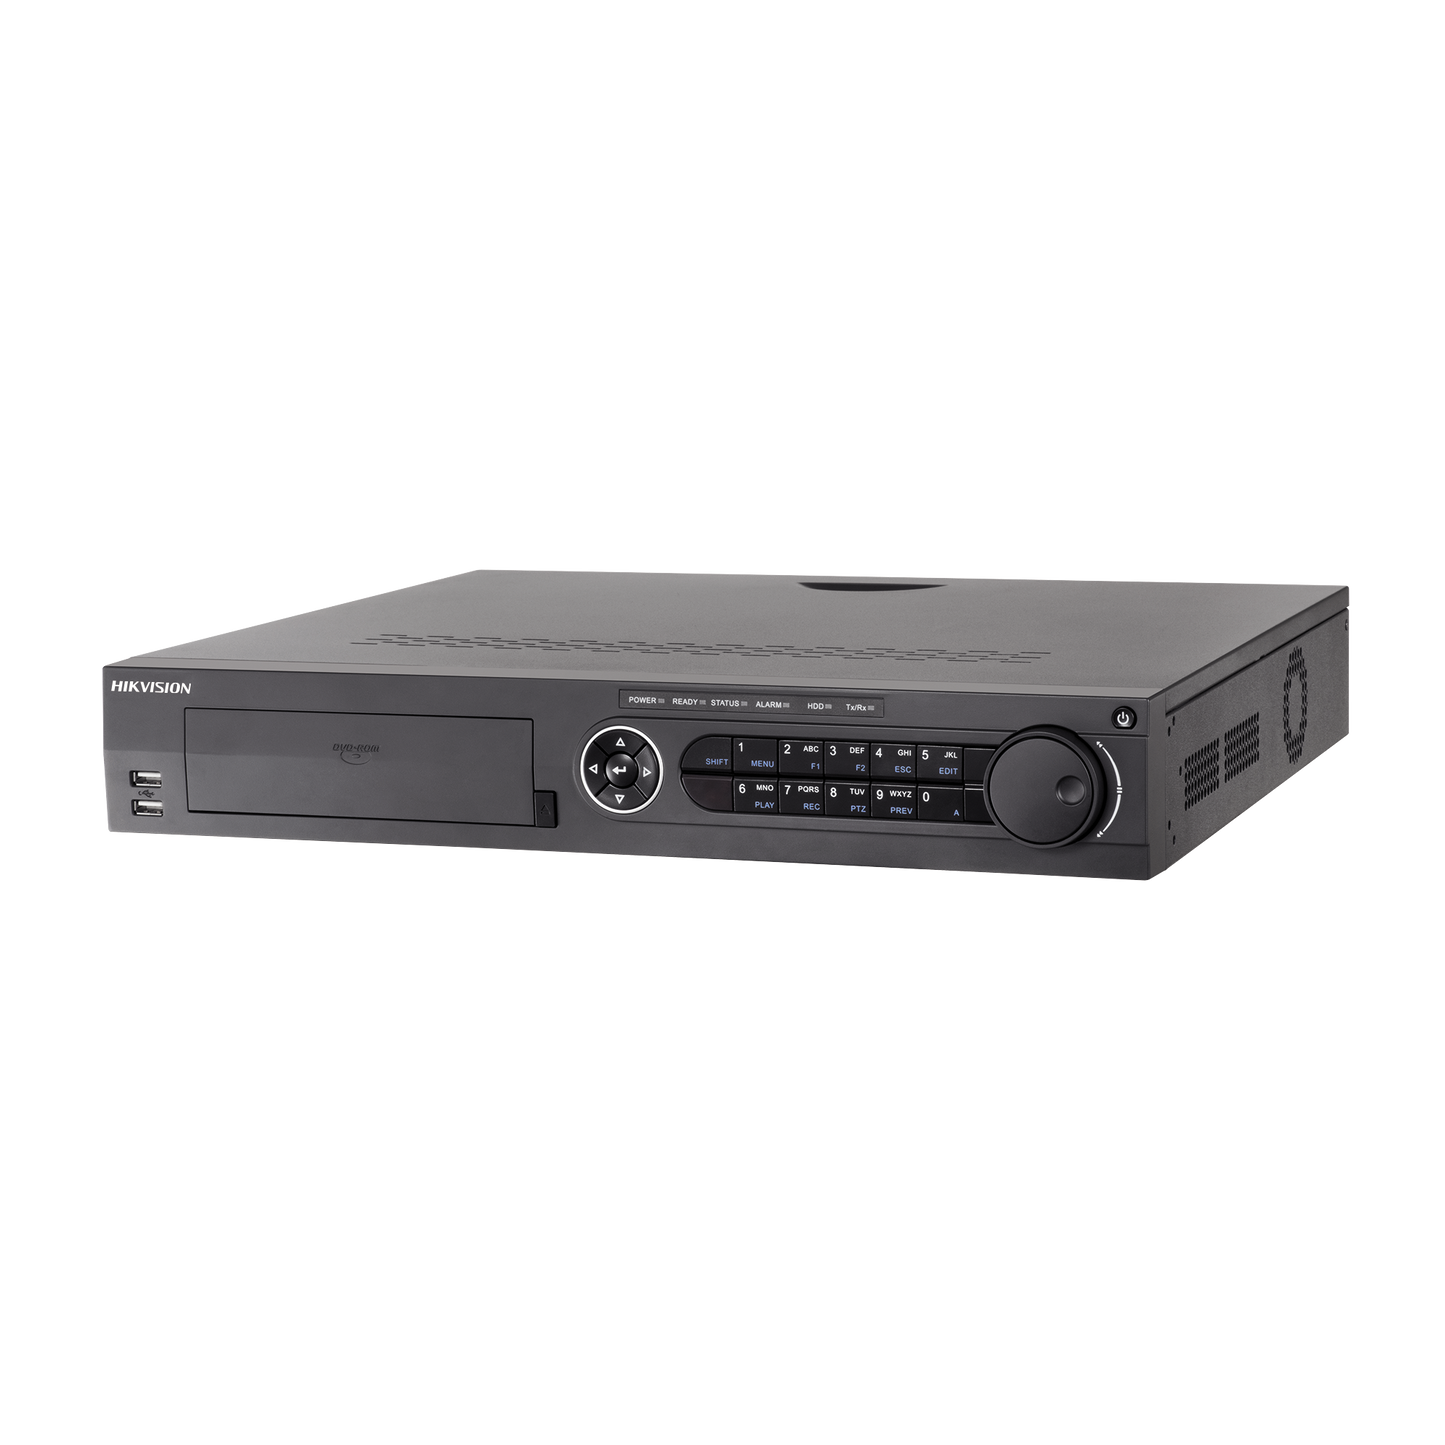 DVR 4K/8MP 16 Canales TurboHD  + 18 Canales IP / 4 Bahías de Disco Duro / Audio por Coaxitron / AcuSense / 16 Entradas de Alarma / 2 Salida de Video Independiente